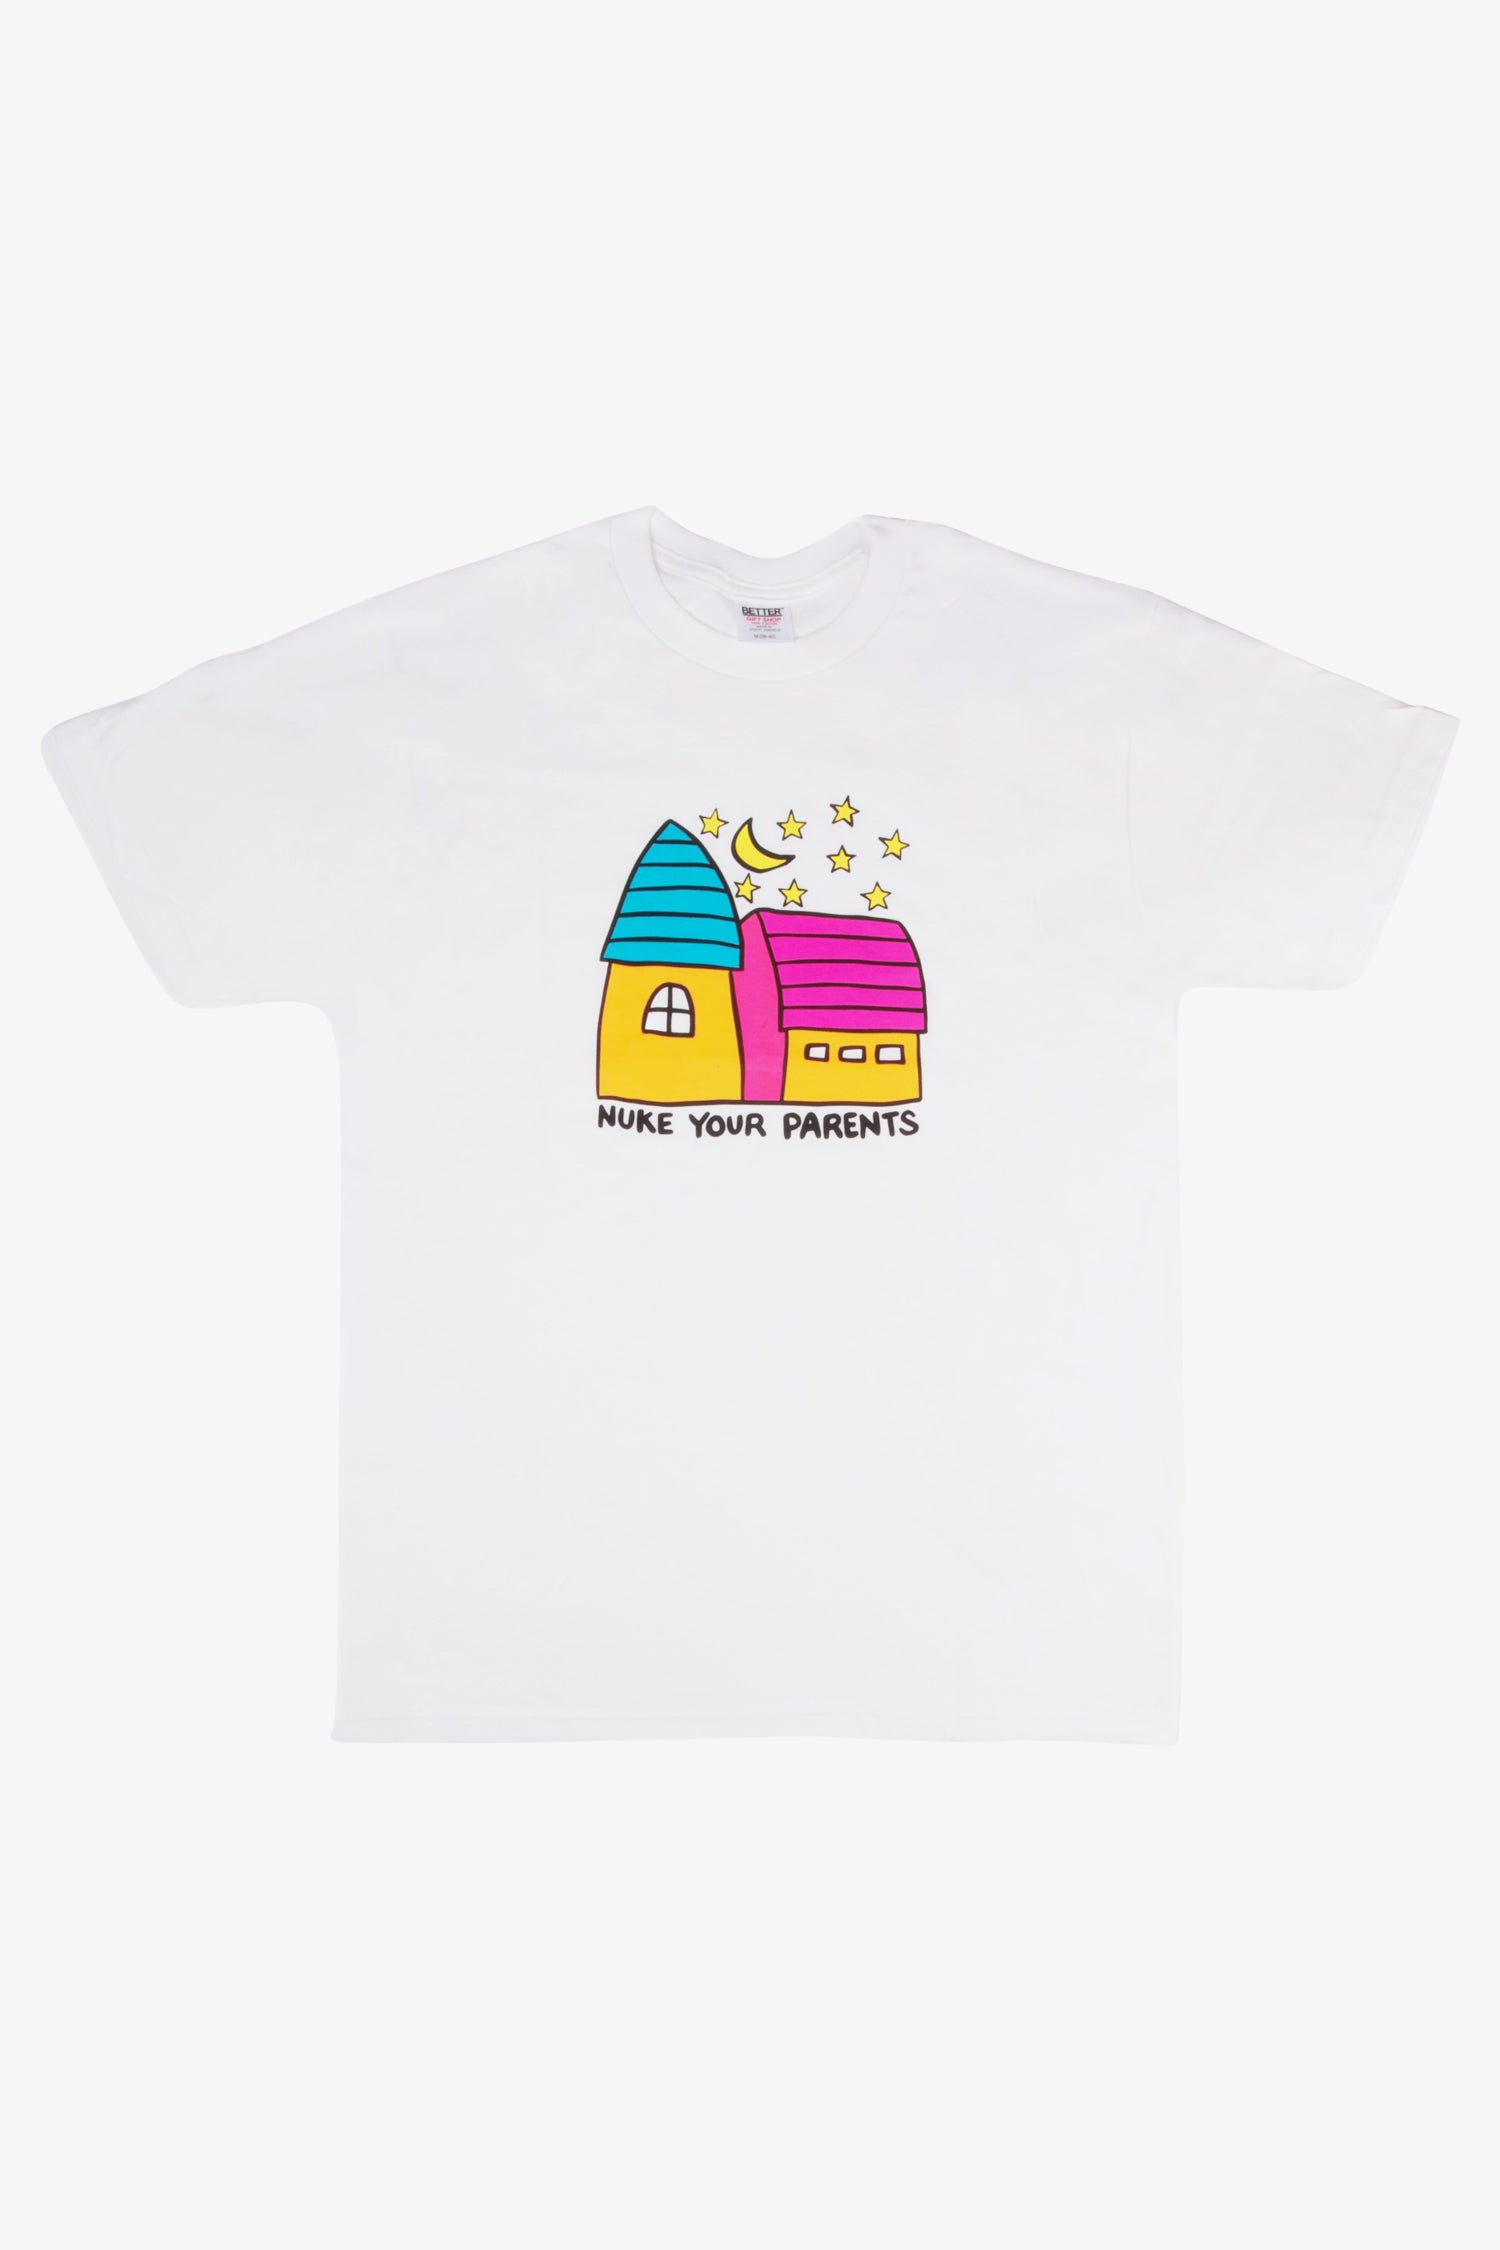 Selectshop FRAME - BETTER Nuke Your Parents Tee T-Shirts Dubai